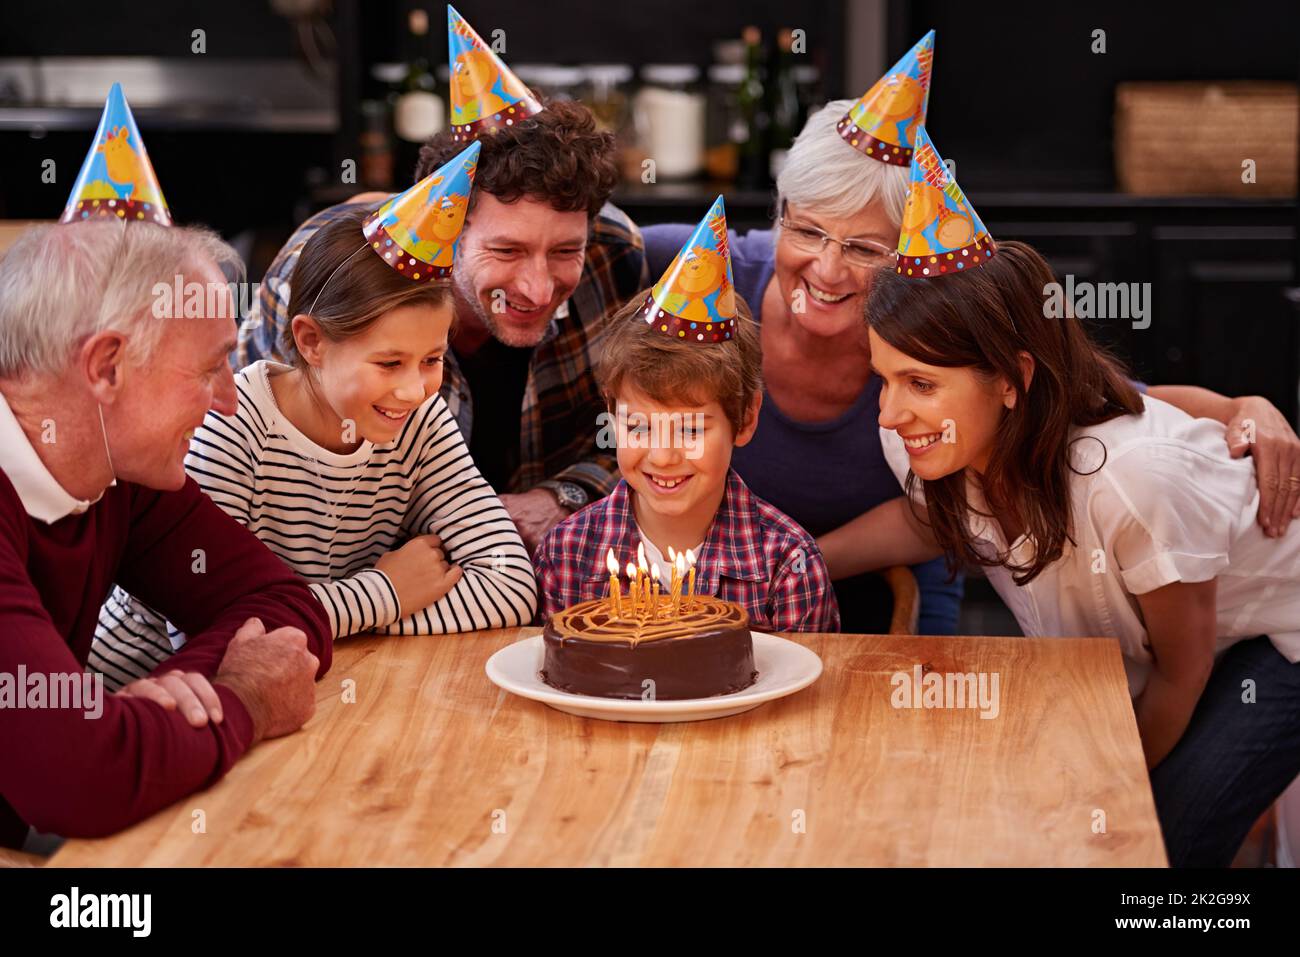 Machen Sie einen Wunsch, bevor Sie sie ausblasen. Aufnahme eines glücklichen Jungen, der mit seiner Familie Geburtstag feiert. Stockfoto